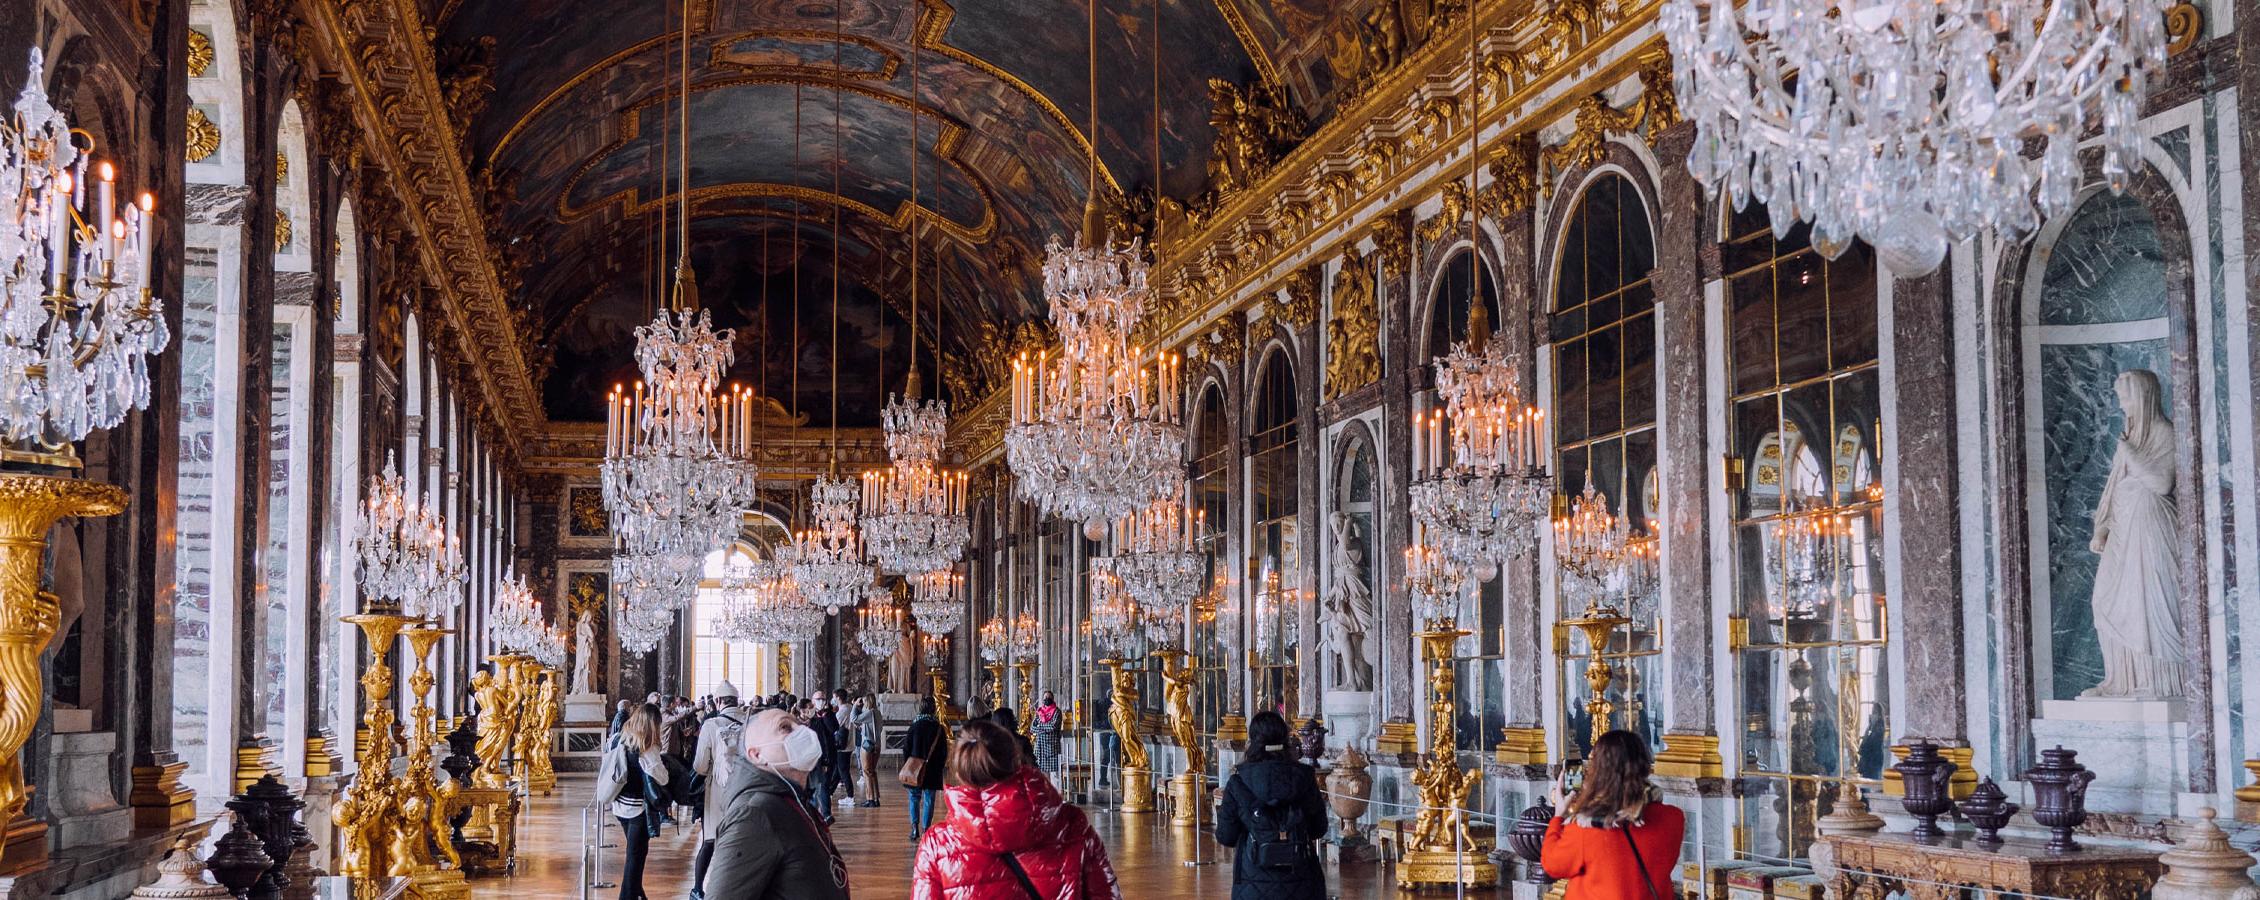 凡尔赛宫的镜厅.